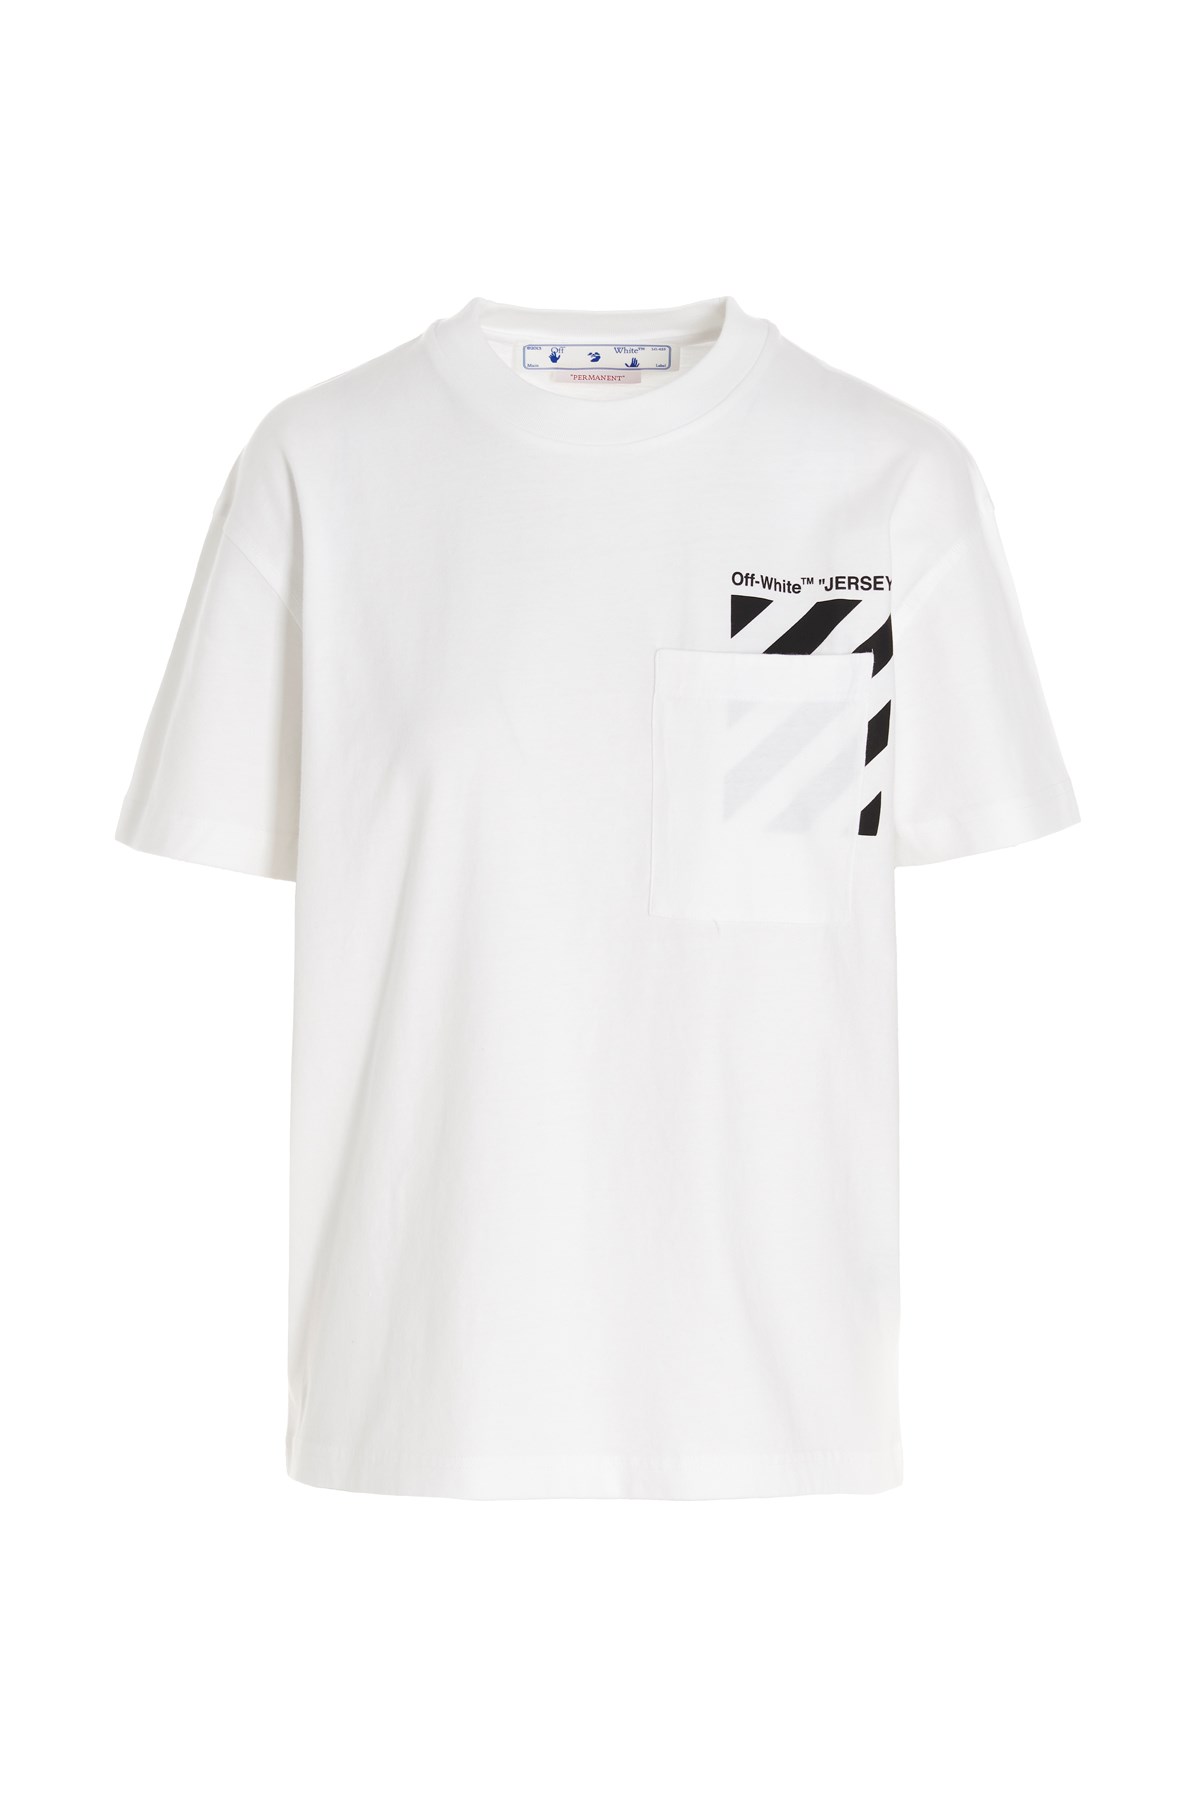 OFF-WHITE T-Shirt 'Diag Pkt'